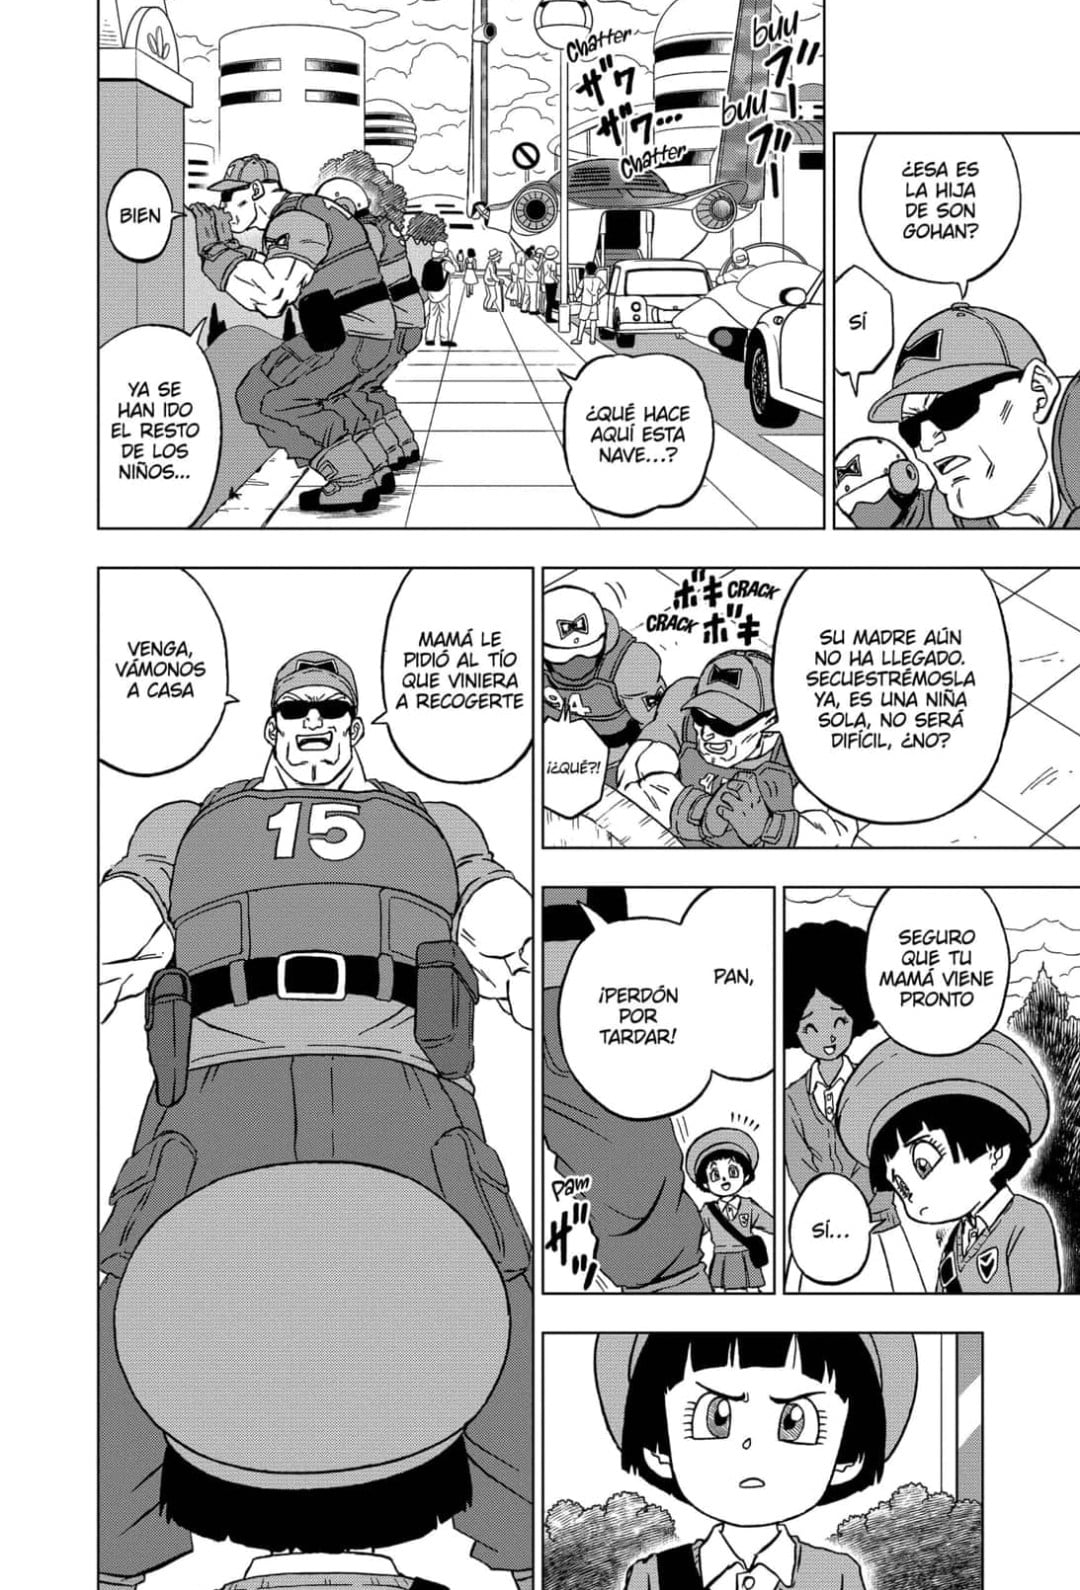 Poniball 超 - El capítulo 94 del manga de Dragon Ball Super supuso